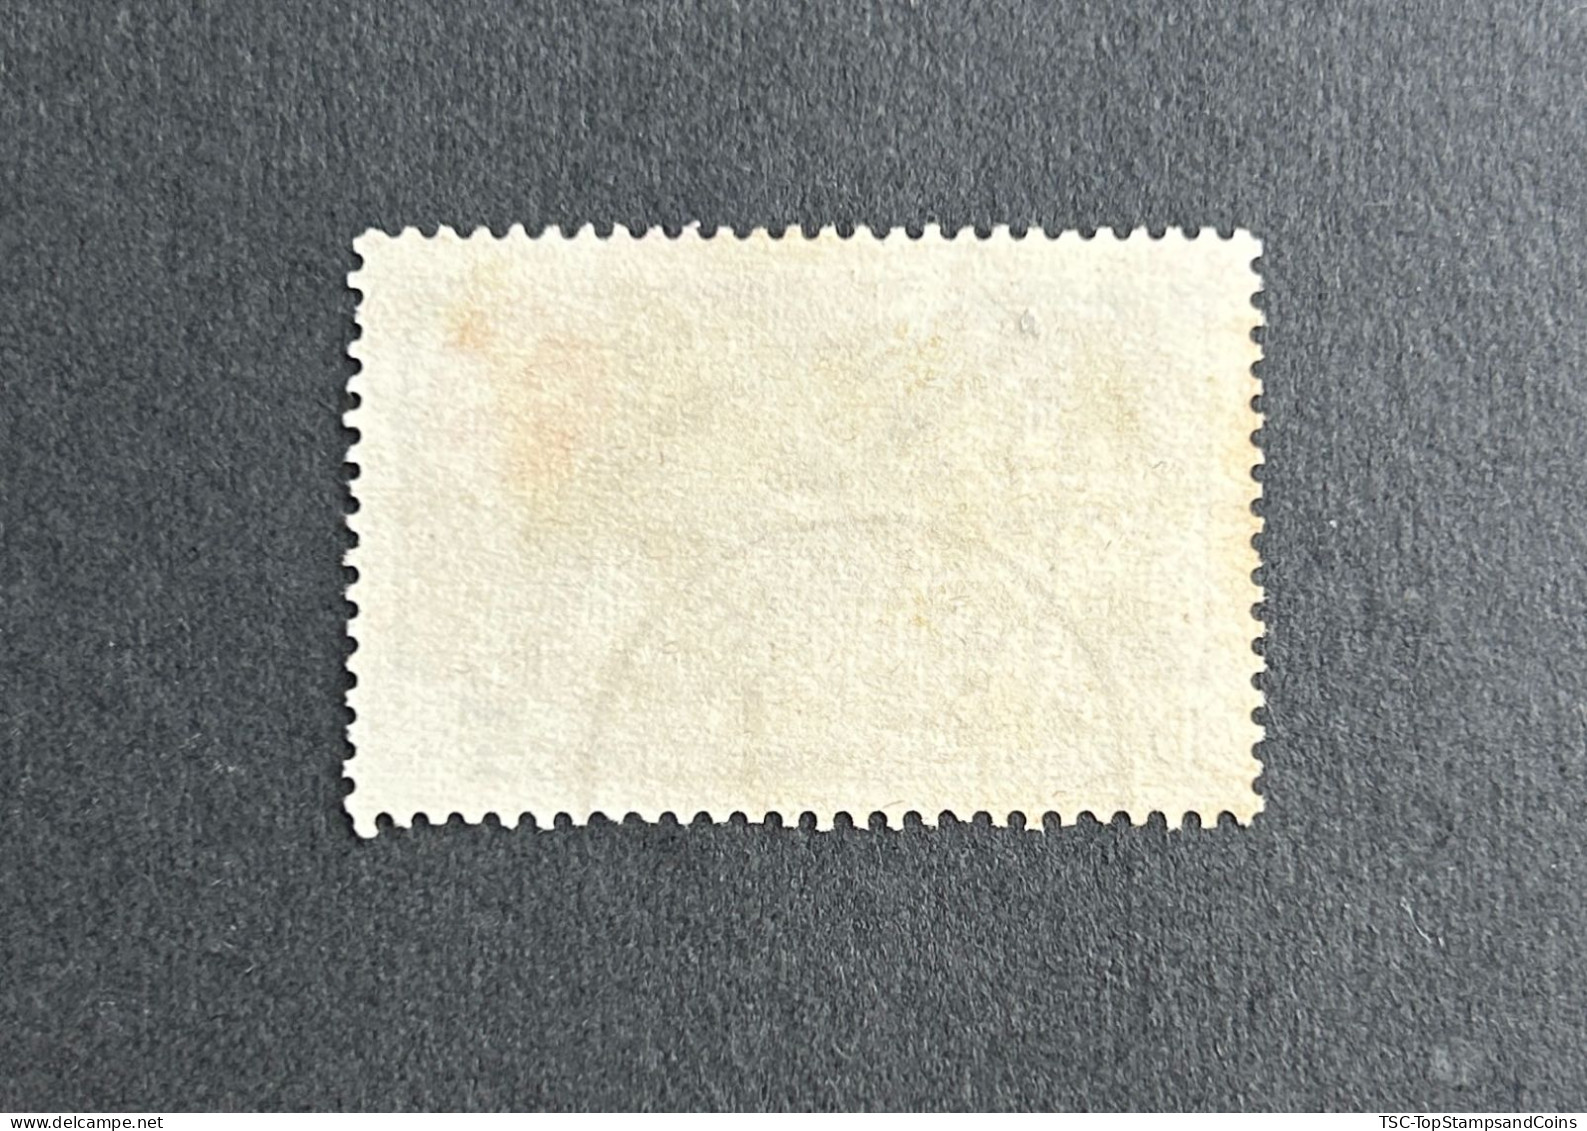 FRAEQ0237U1 - Order Of Malta - Leprosy Relief - 15 F Used Stamp - AEF - 1957 - Gebraucht